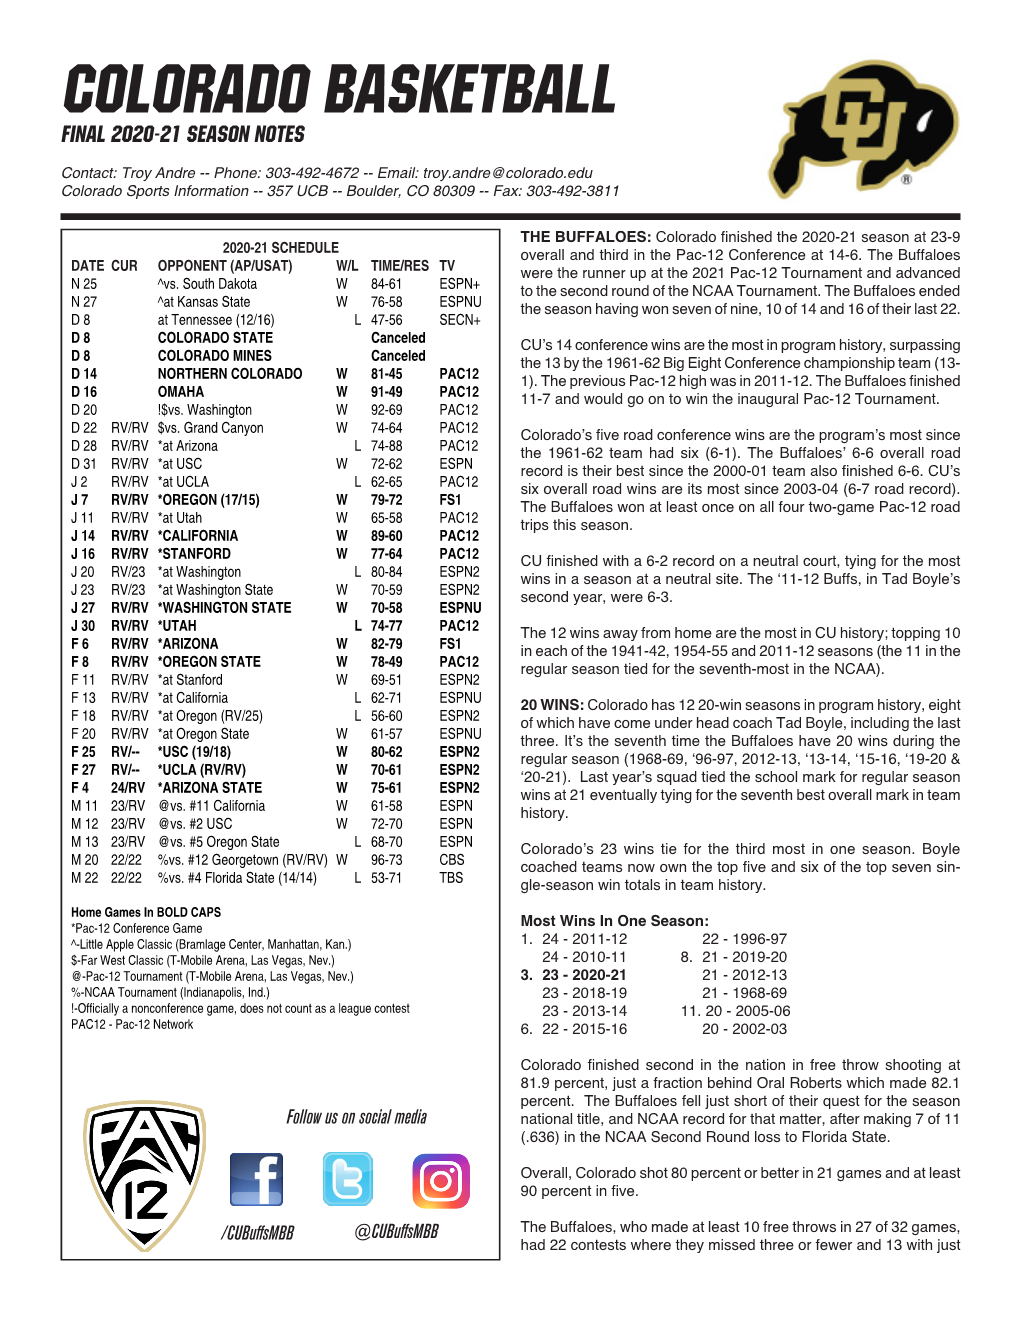 Colorado Basketball Final 2020-21 Season Notes